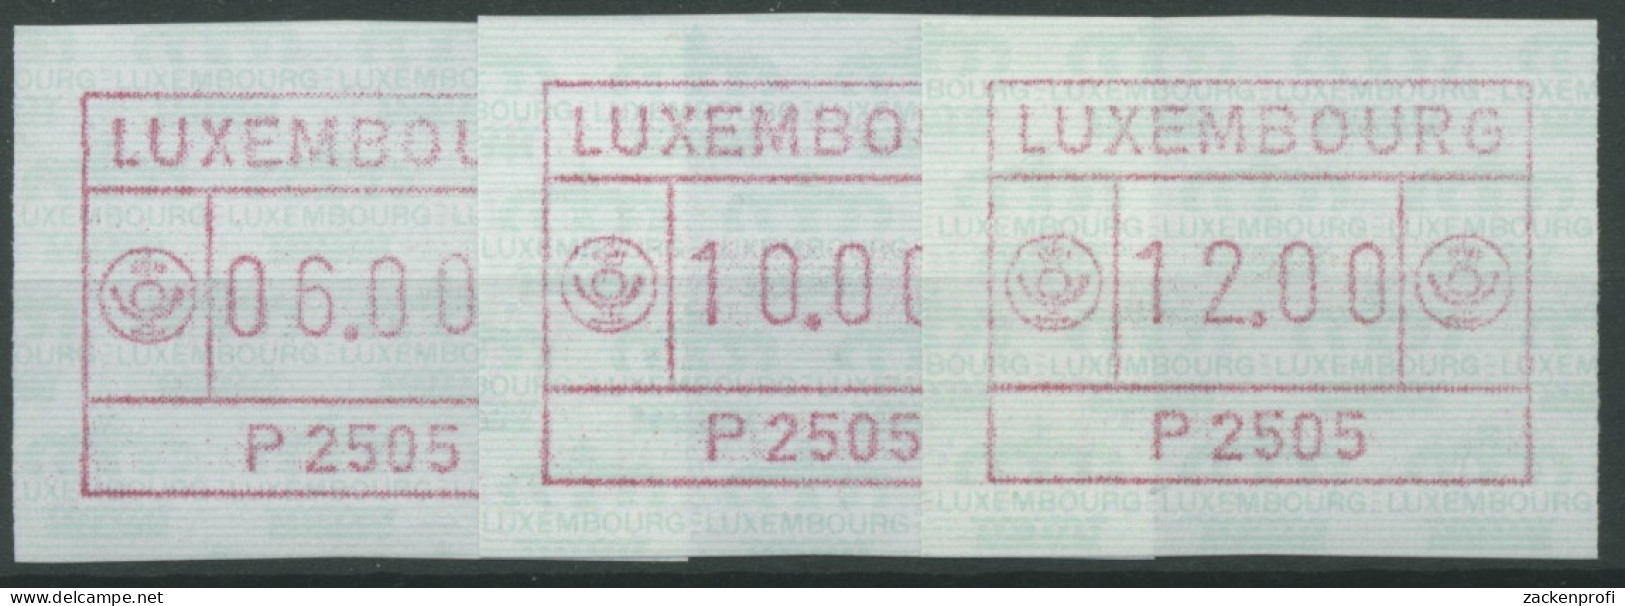 Luxemburg 1983 Automatenmarke 1 Satz 3 Werte Automat P2505 Postfrisch - Vignettes D'affranchissement